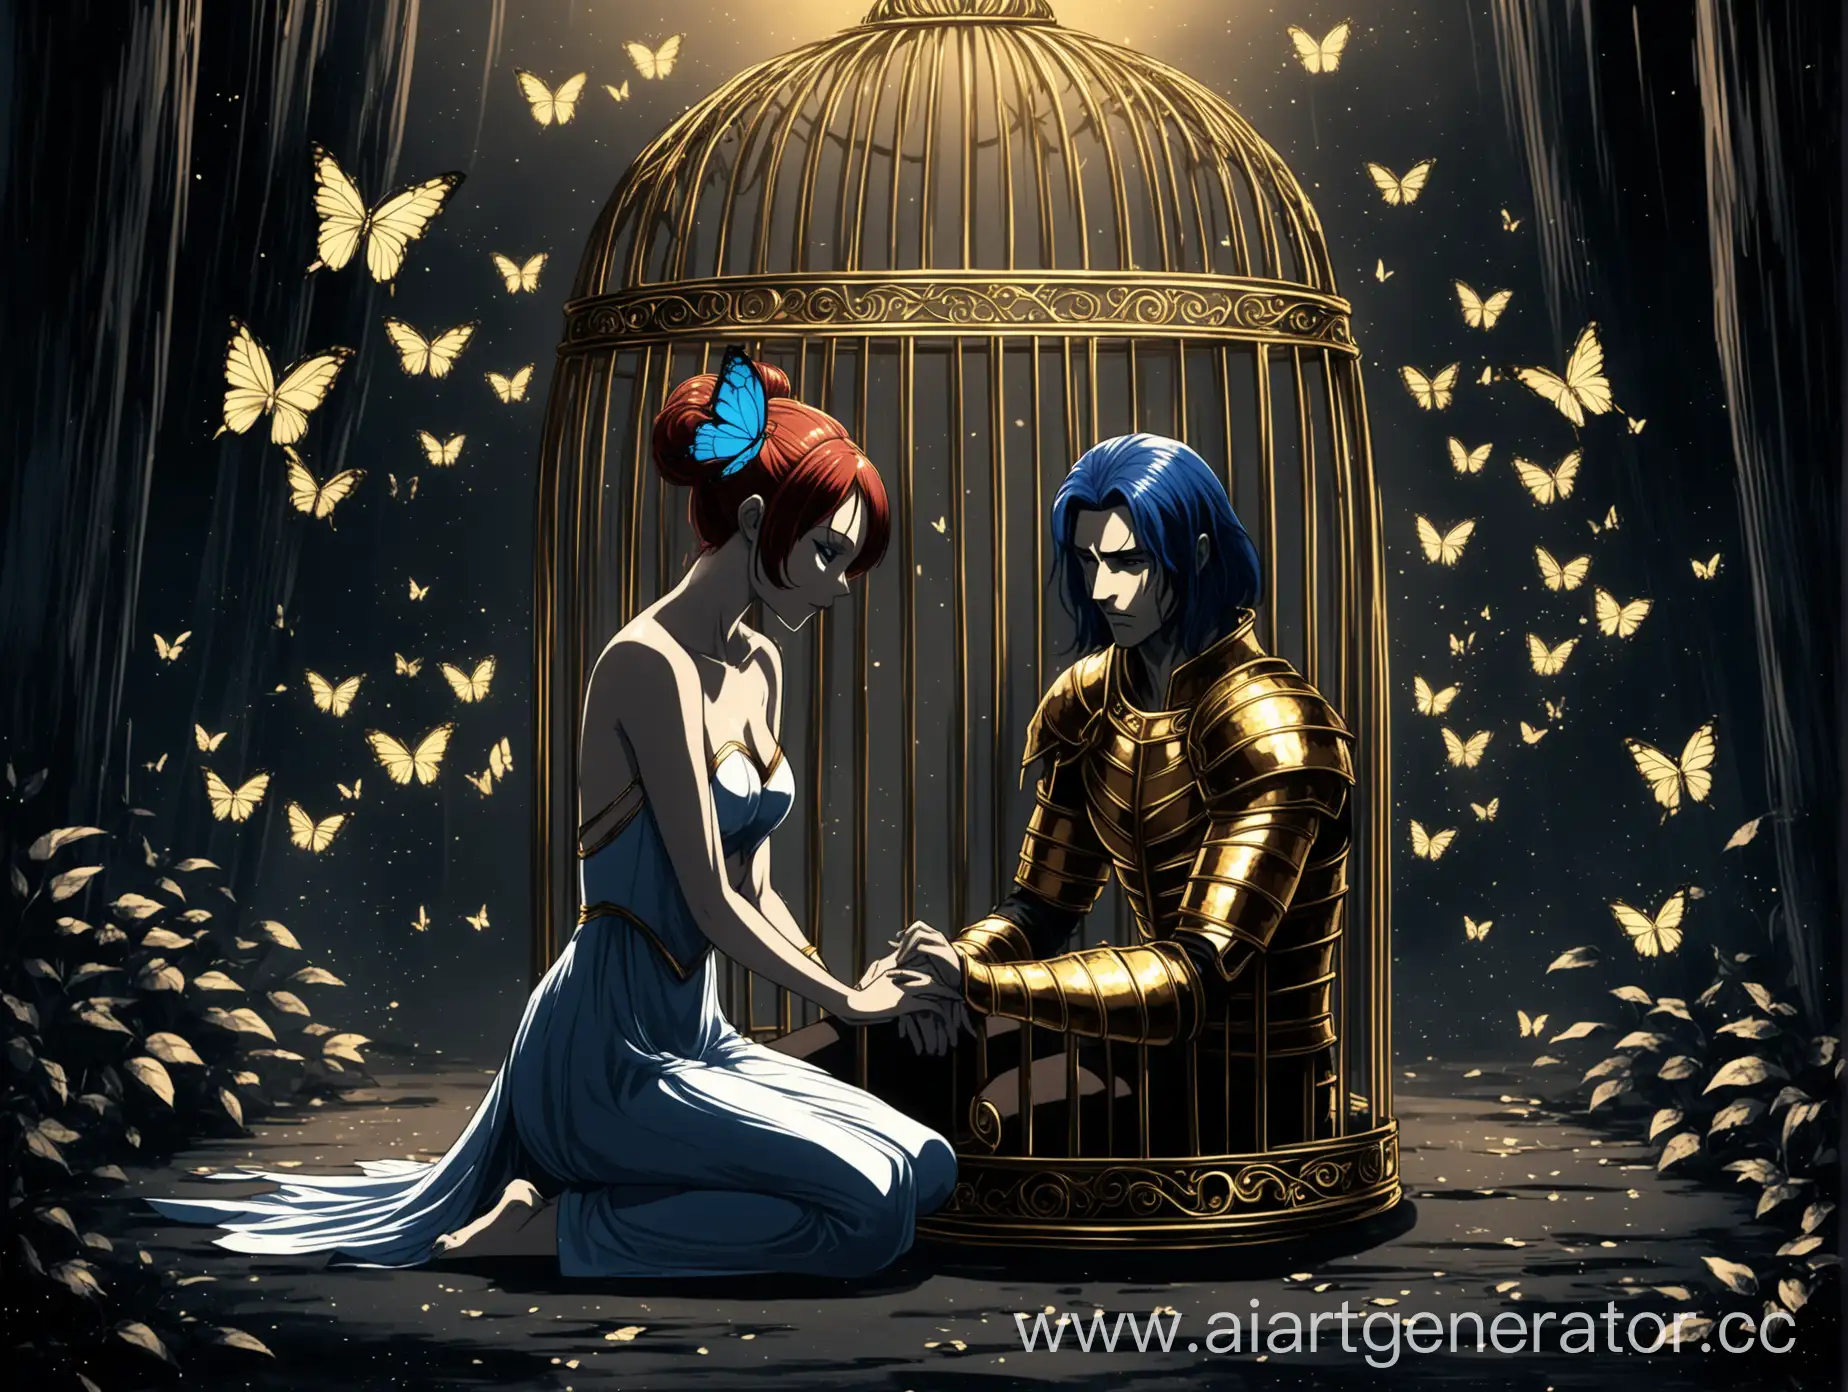 Аниме стиль, девушка с крыльями бабочки сидит в золотой клетке, а рядом с ней молодой воин стоит на коленях, темные тона, мистика, романтика